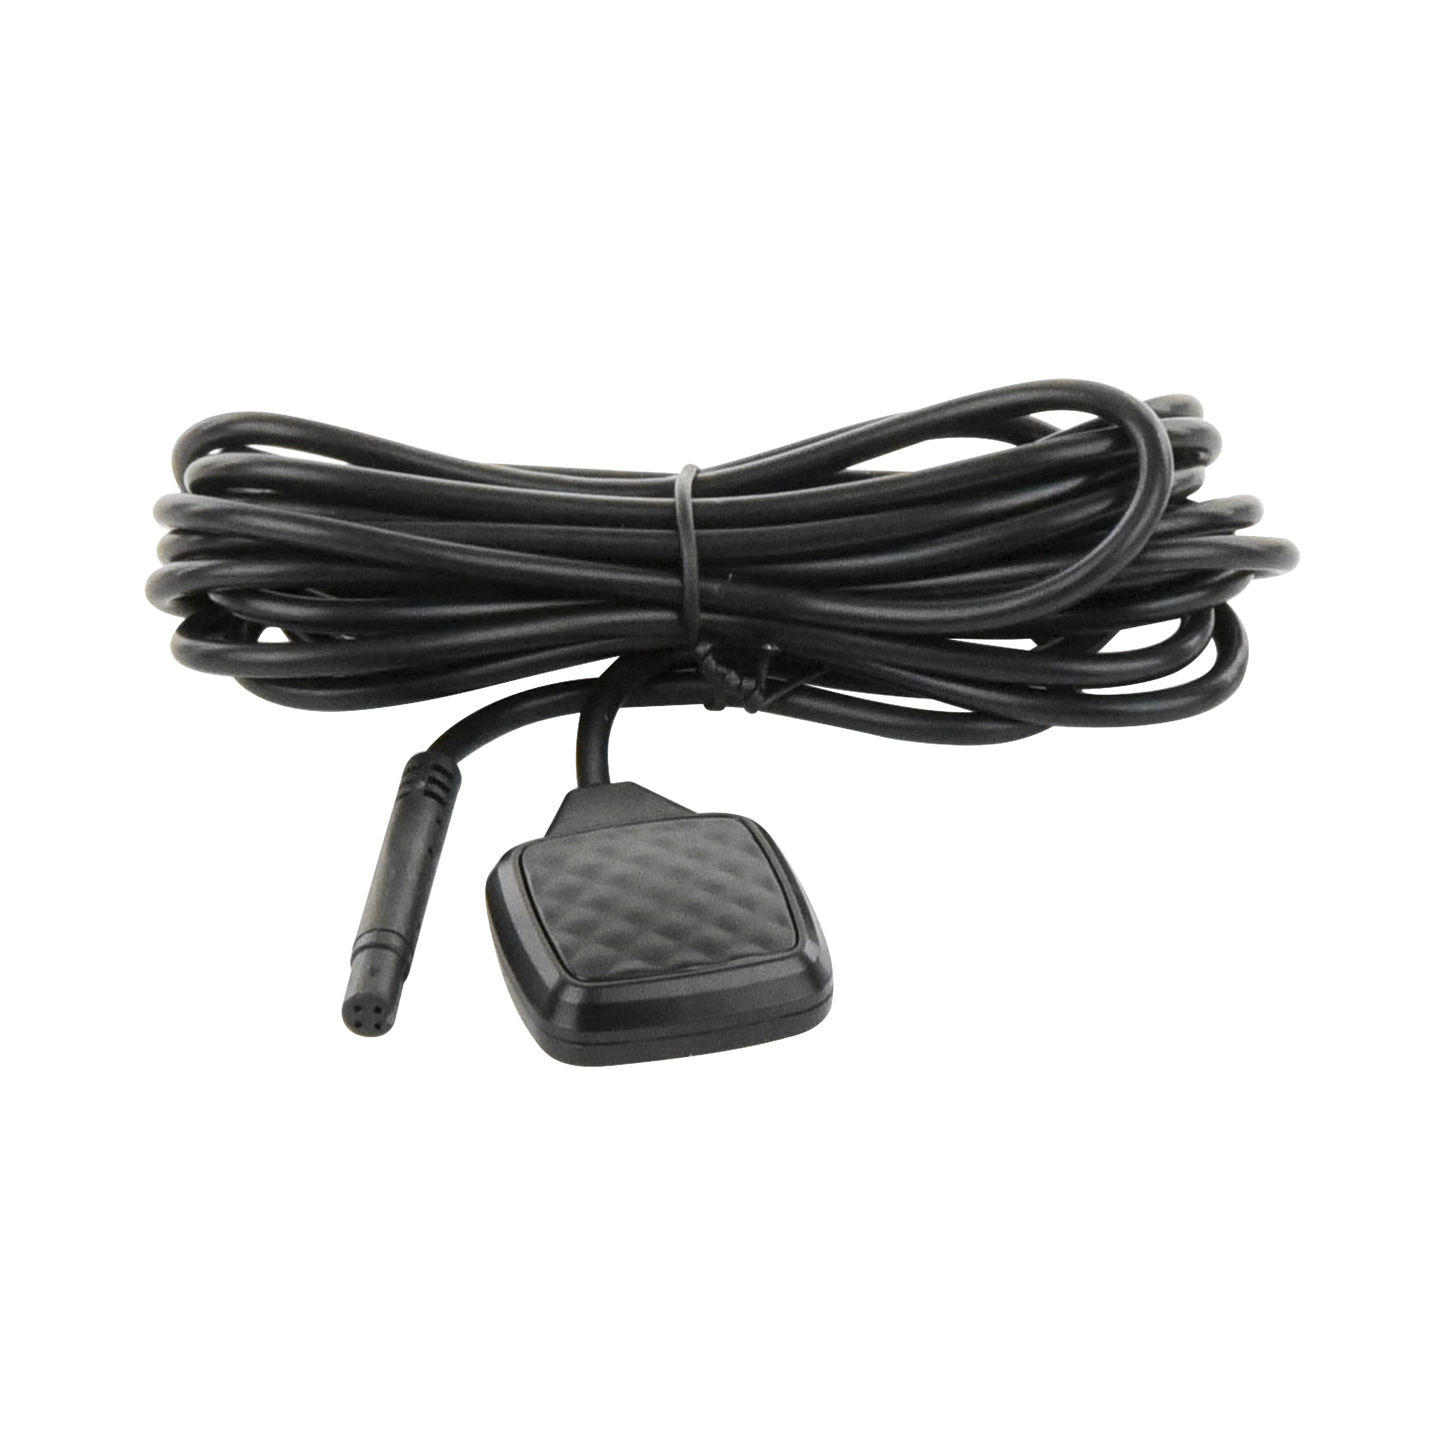 Botón de Alarma Compatible con Dashcam AE-DI5042-G4 / Cable de 2.5 mts de Largo